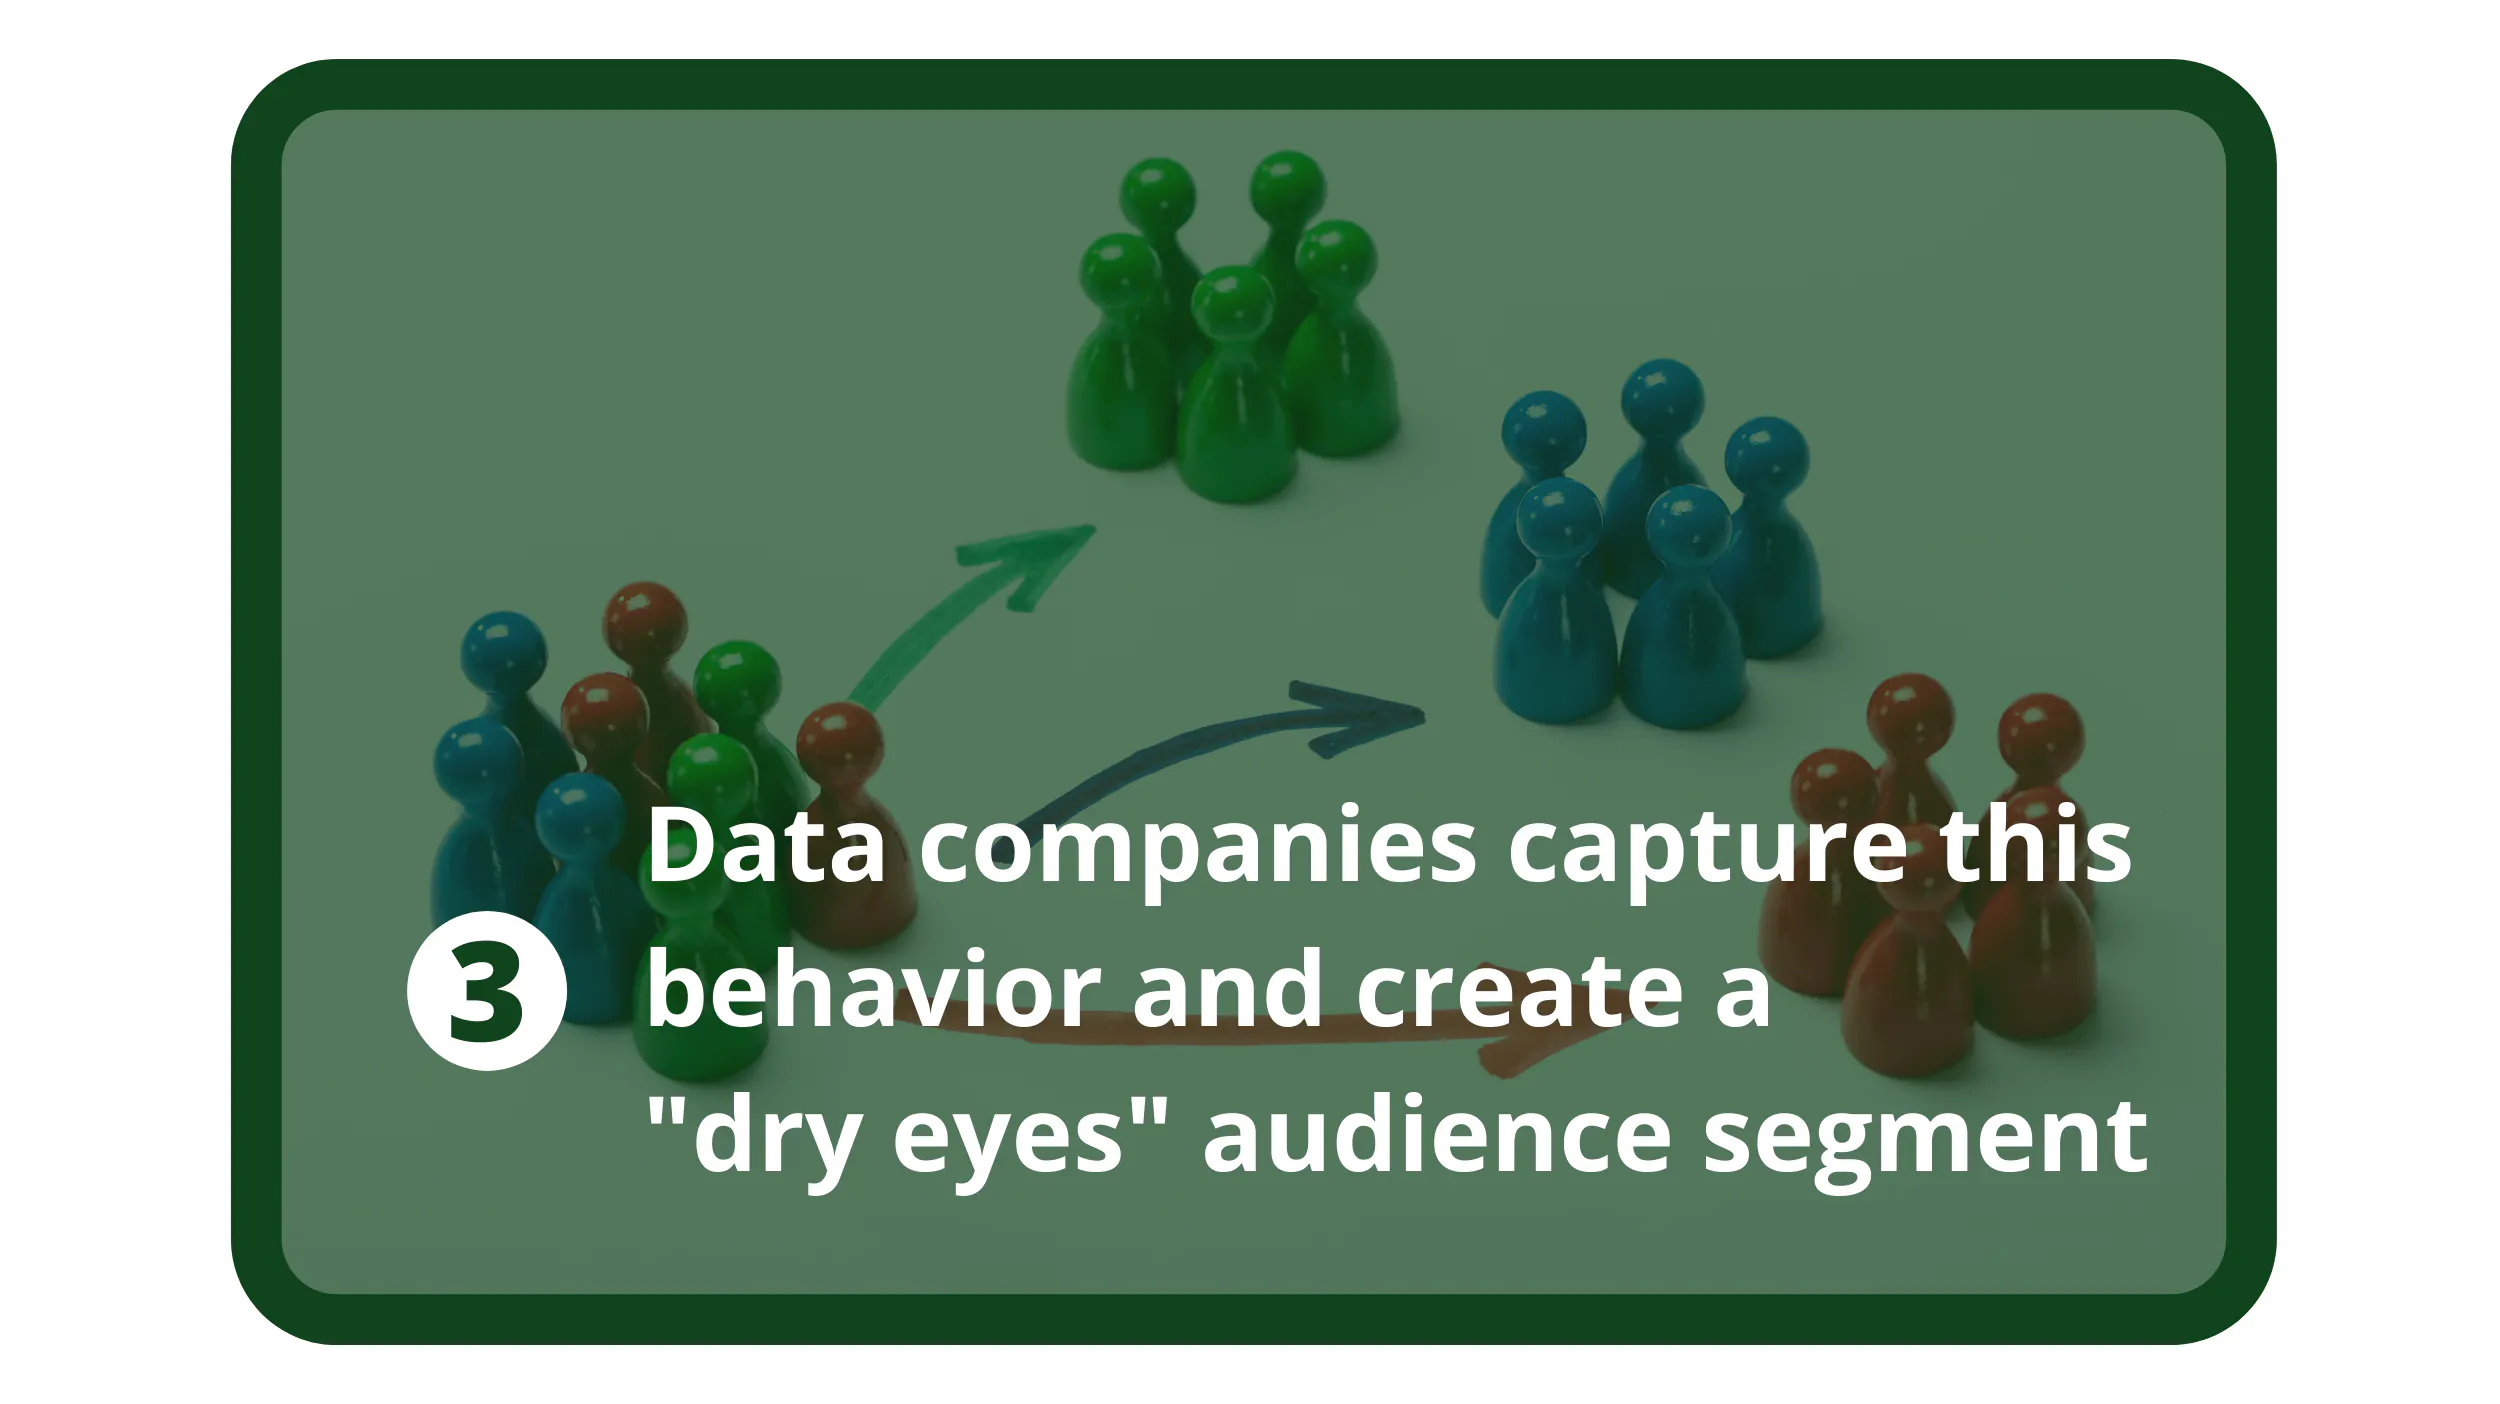 Le aziende di dati catturano questo comportamento degli utenti e creano un segmento di pubblico "occhi asciutti".